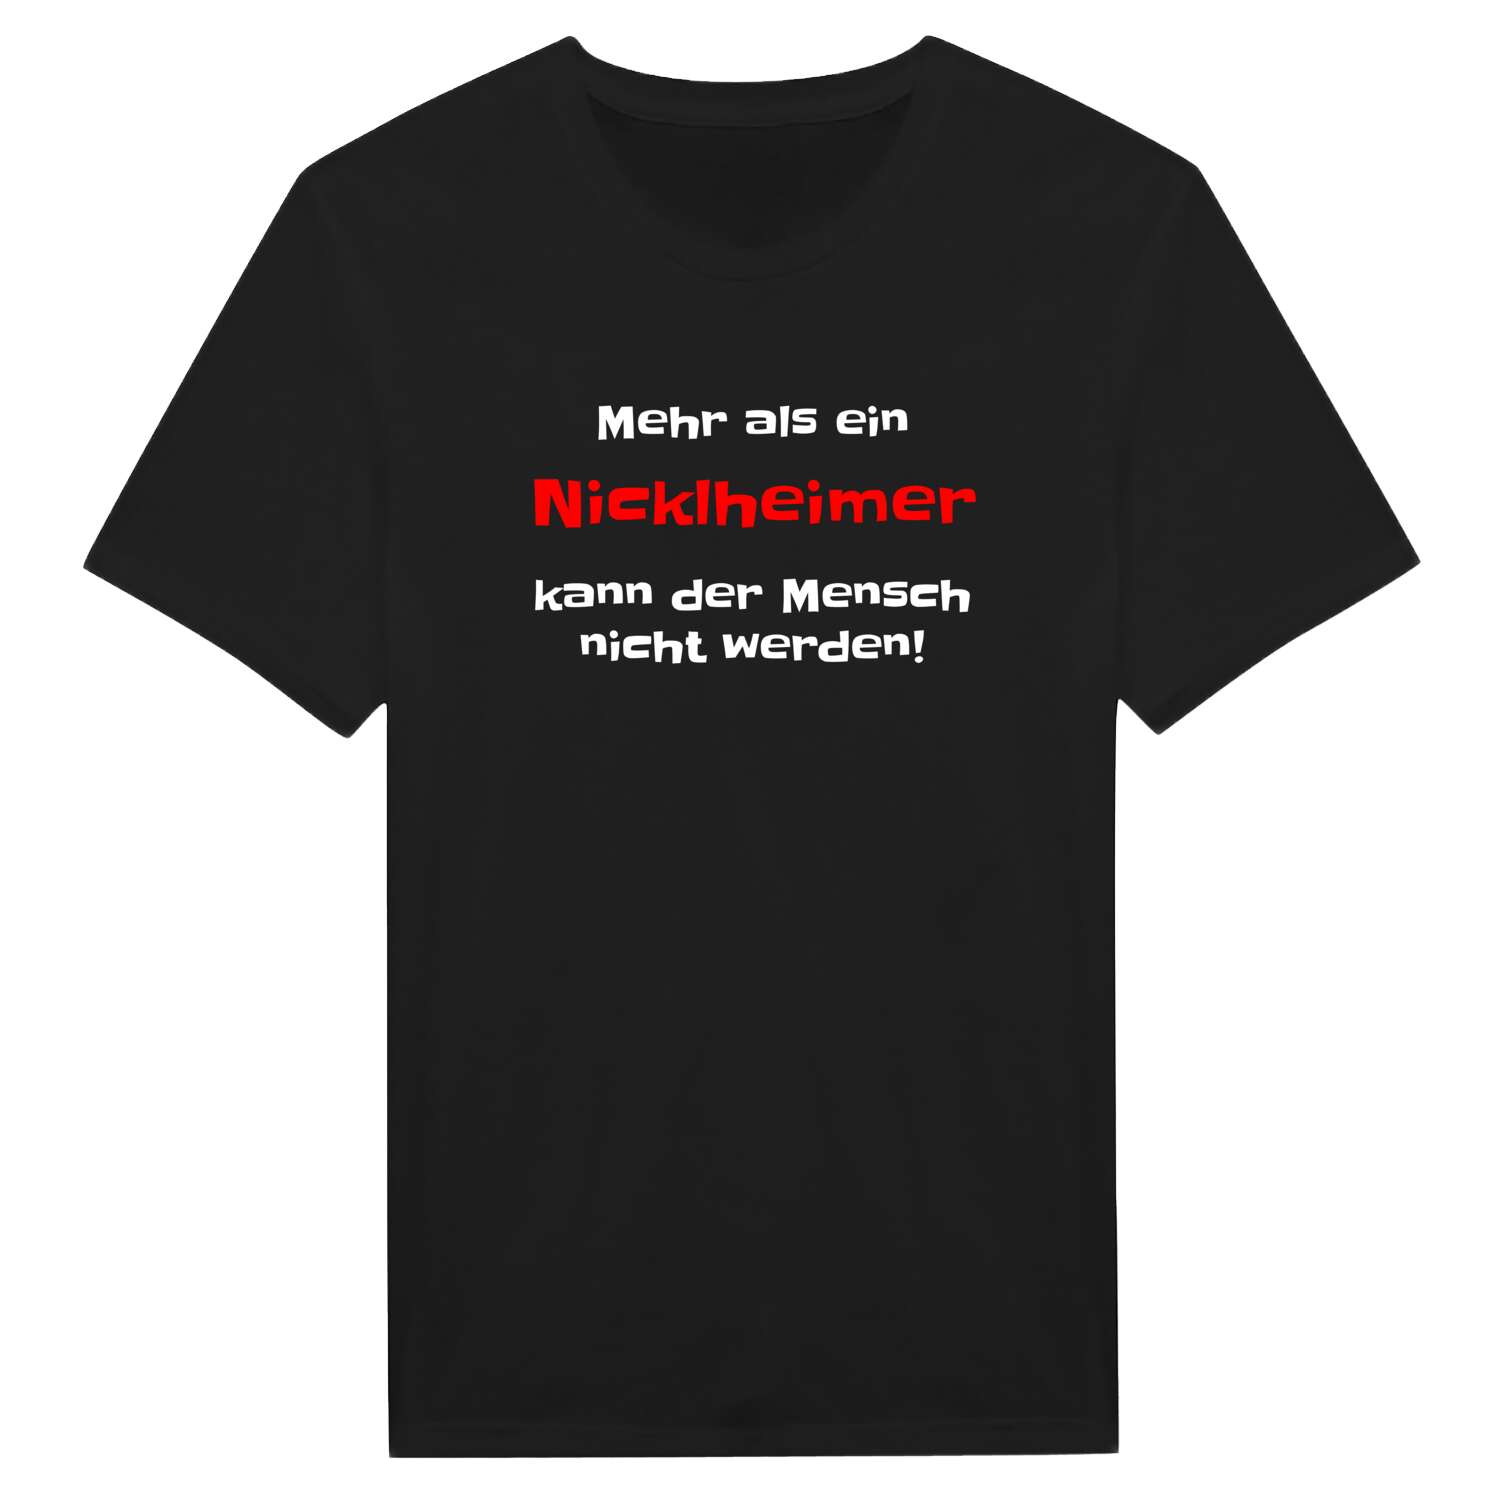 Nicklheim T-Shirt »Mehr als ein«